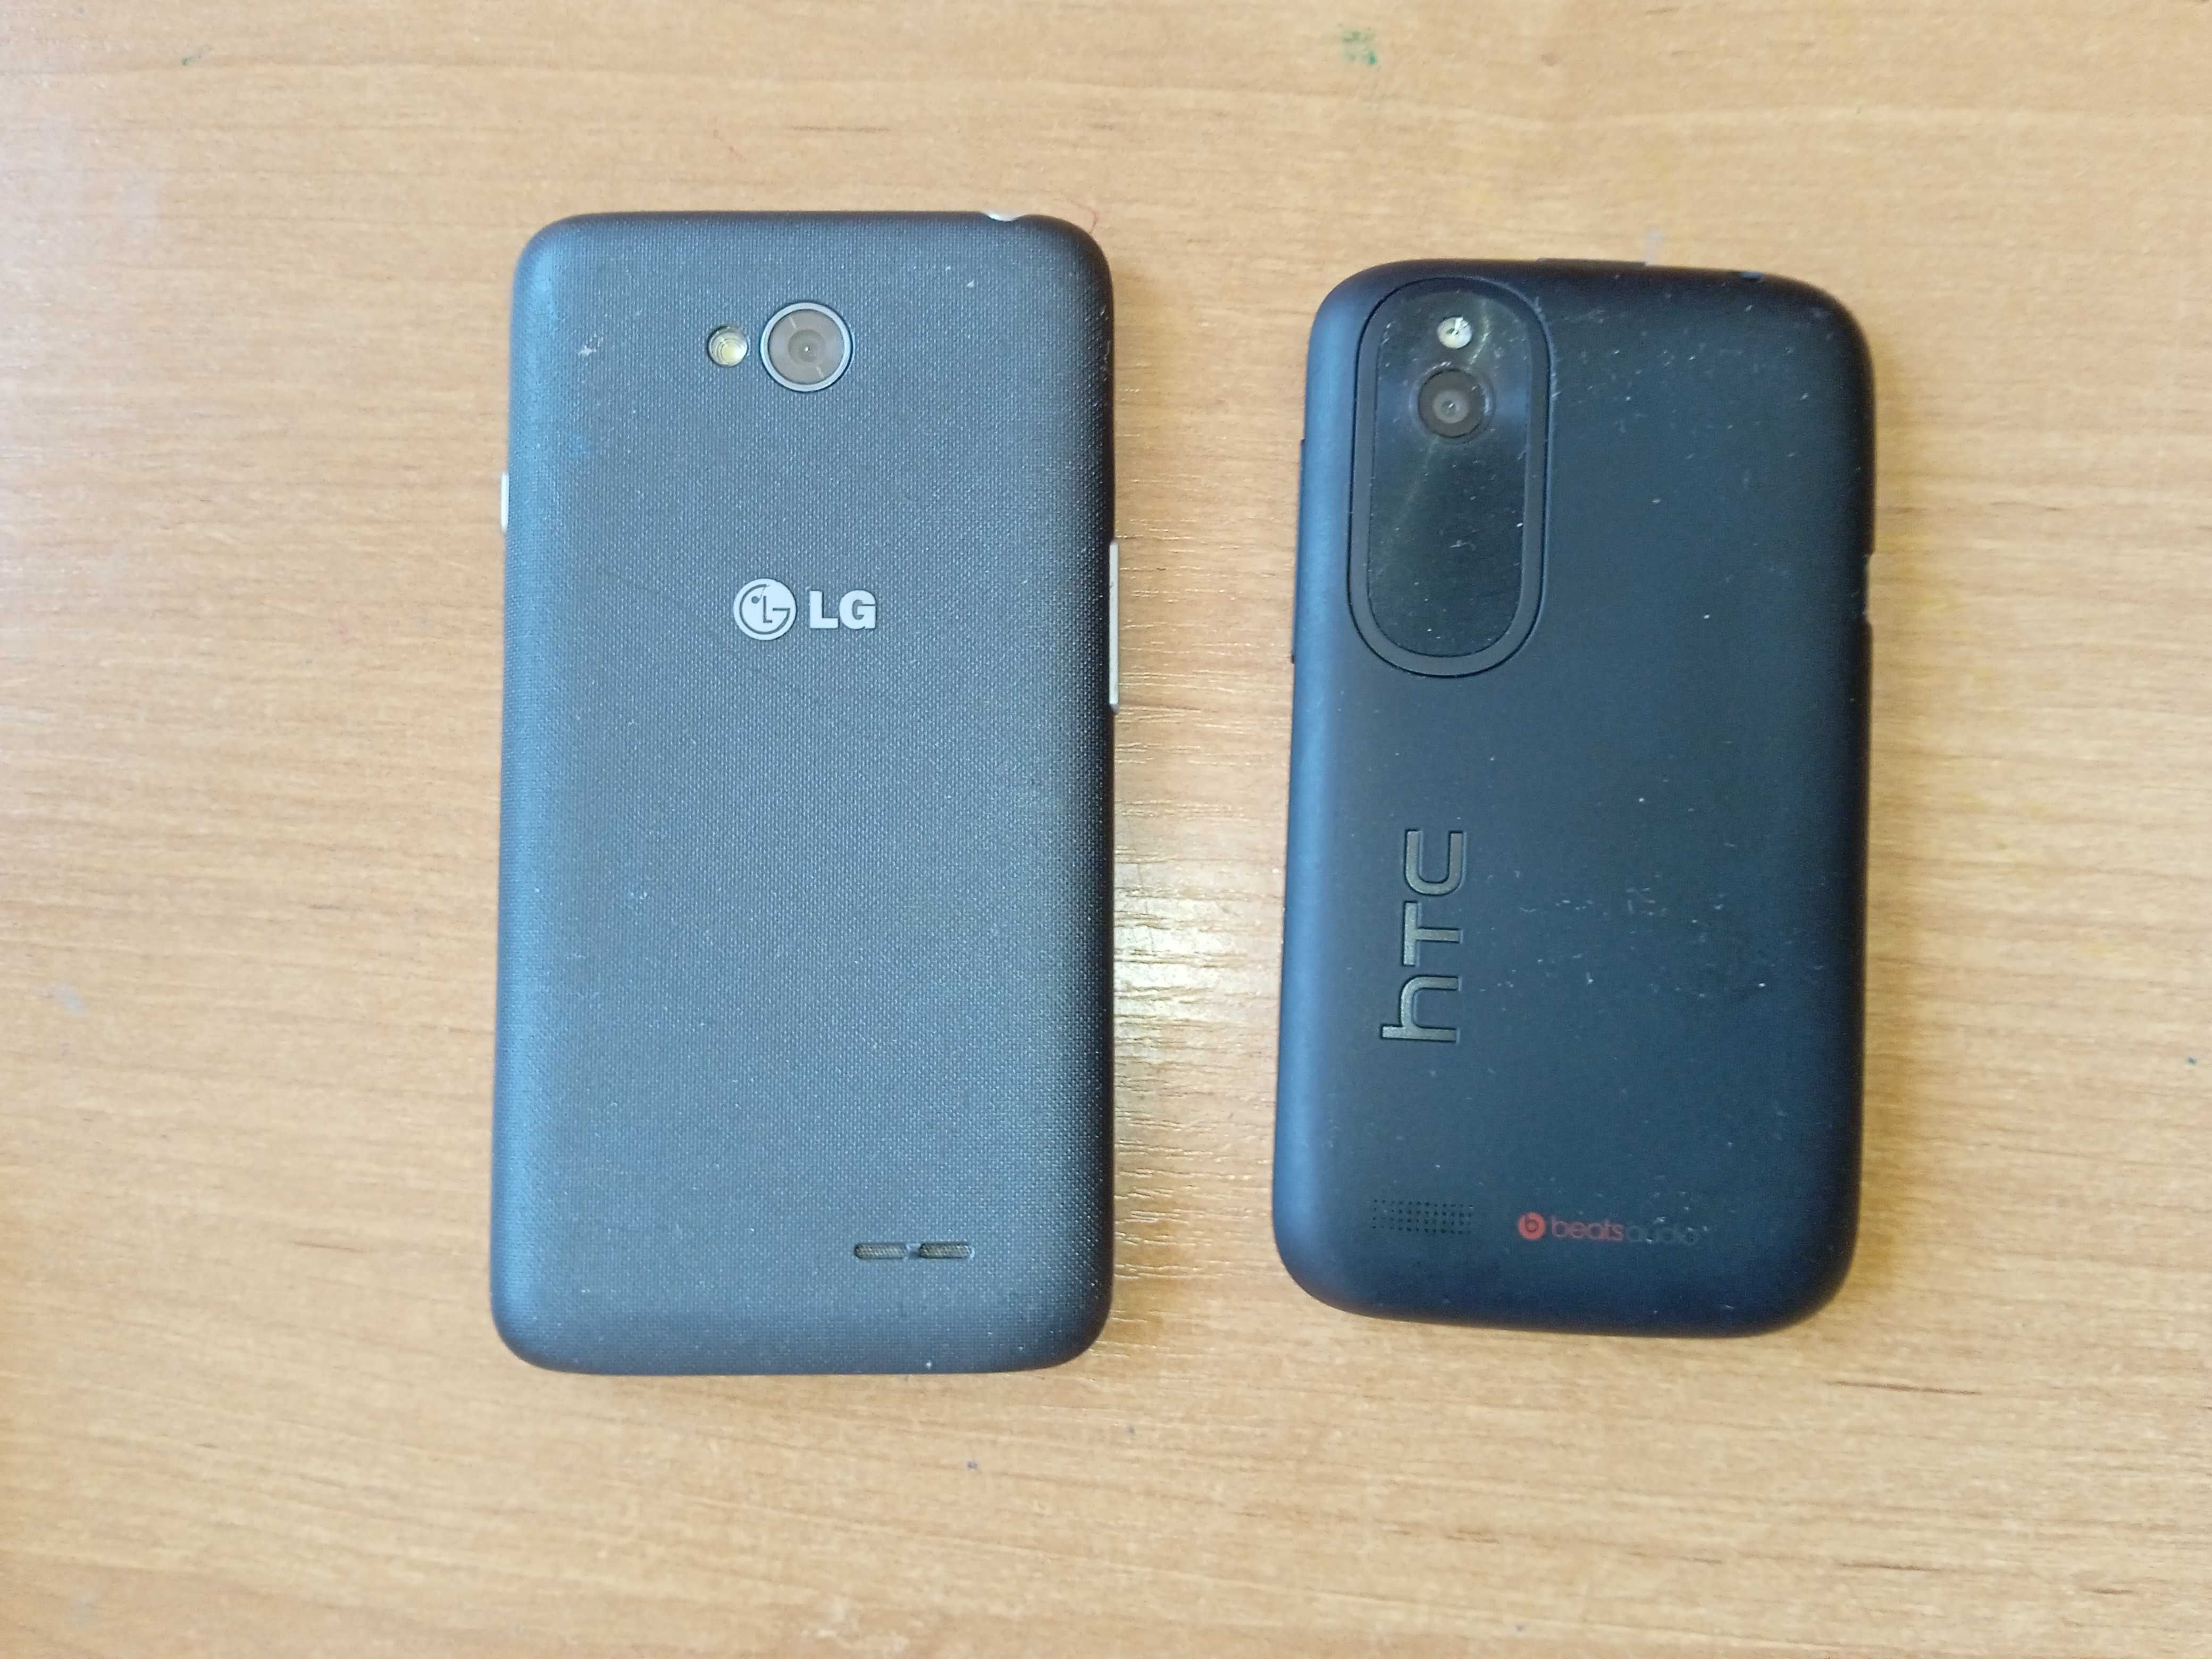 Zestaw Smartfonów 1 sprawny HTC Desire 310 2 Uszkodzone LG D320N HTC